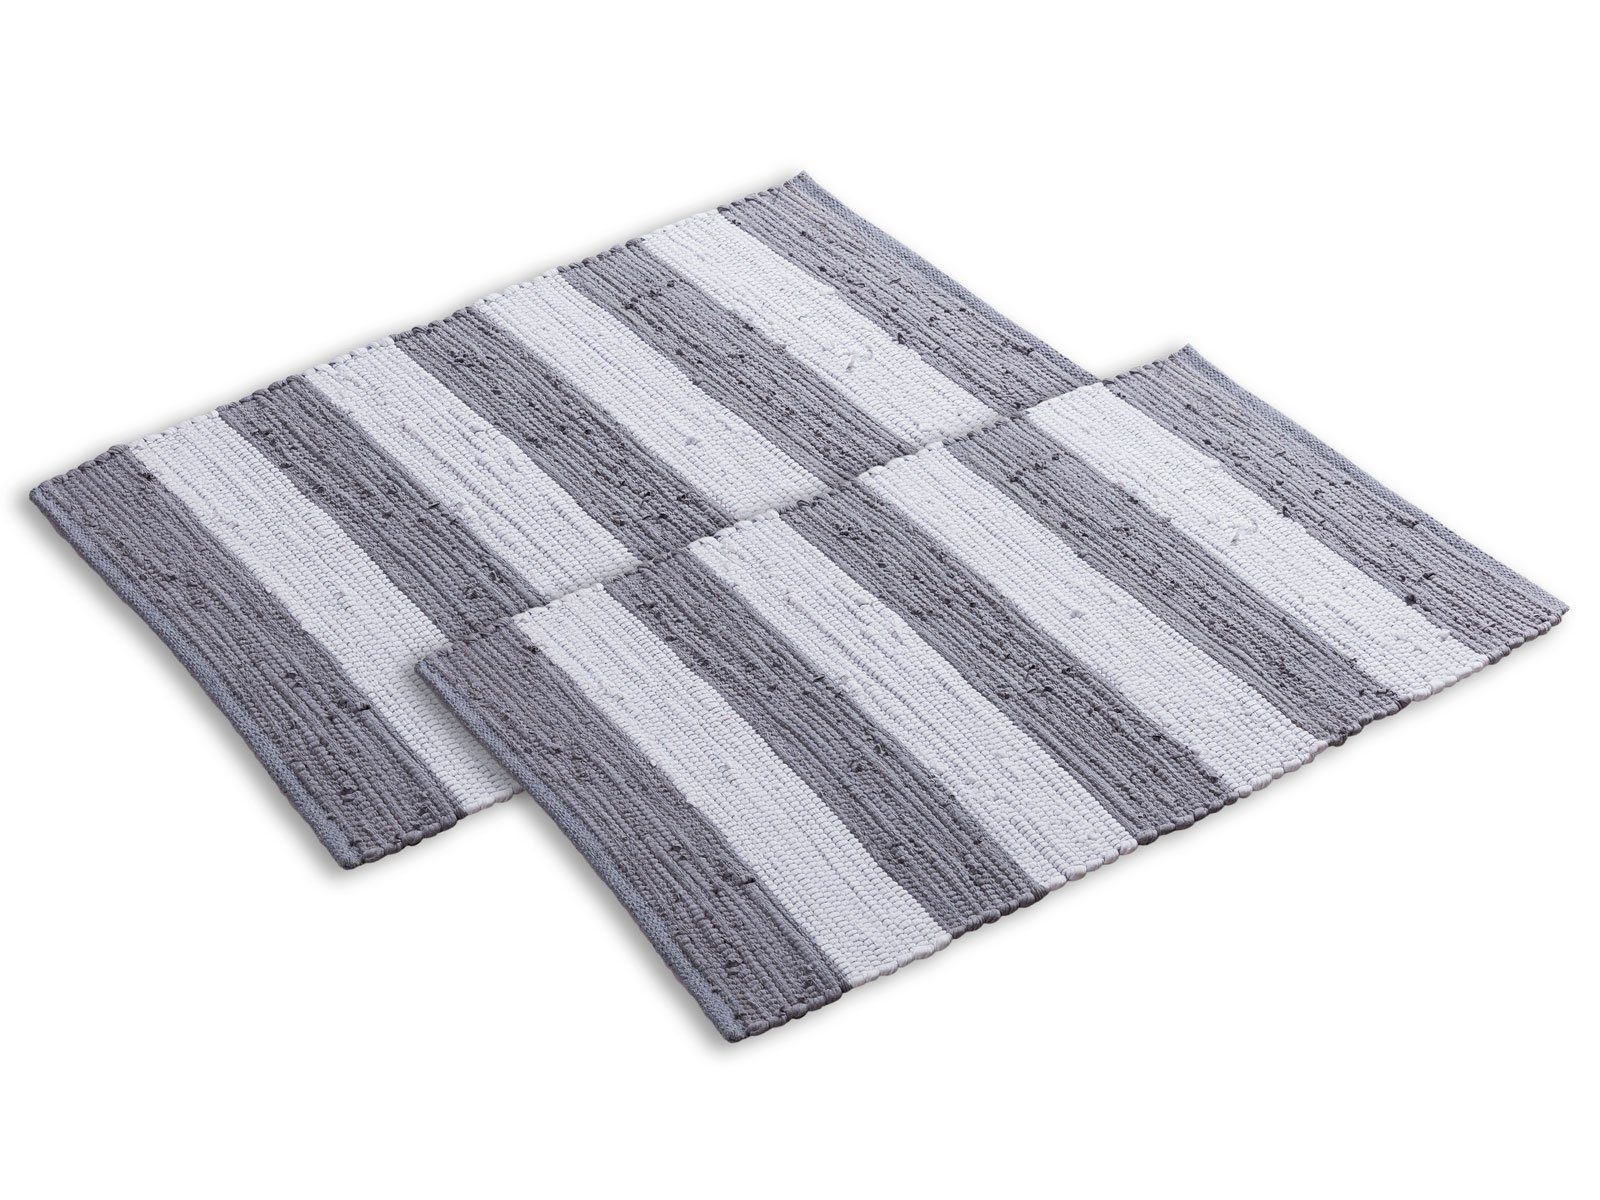 Teppich Badematte Set 2er groß 80x50 Baumwolle Badezimmerteppich Chindi, Minara grau-weiß